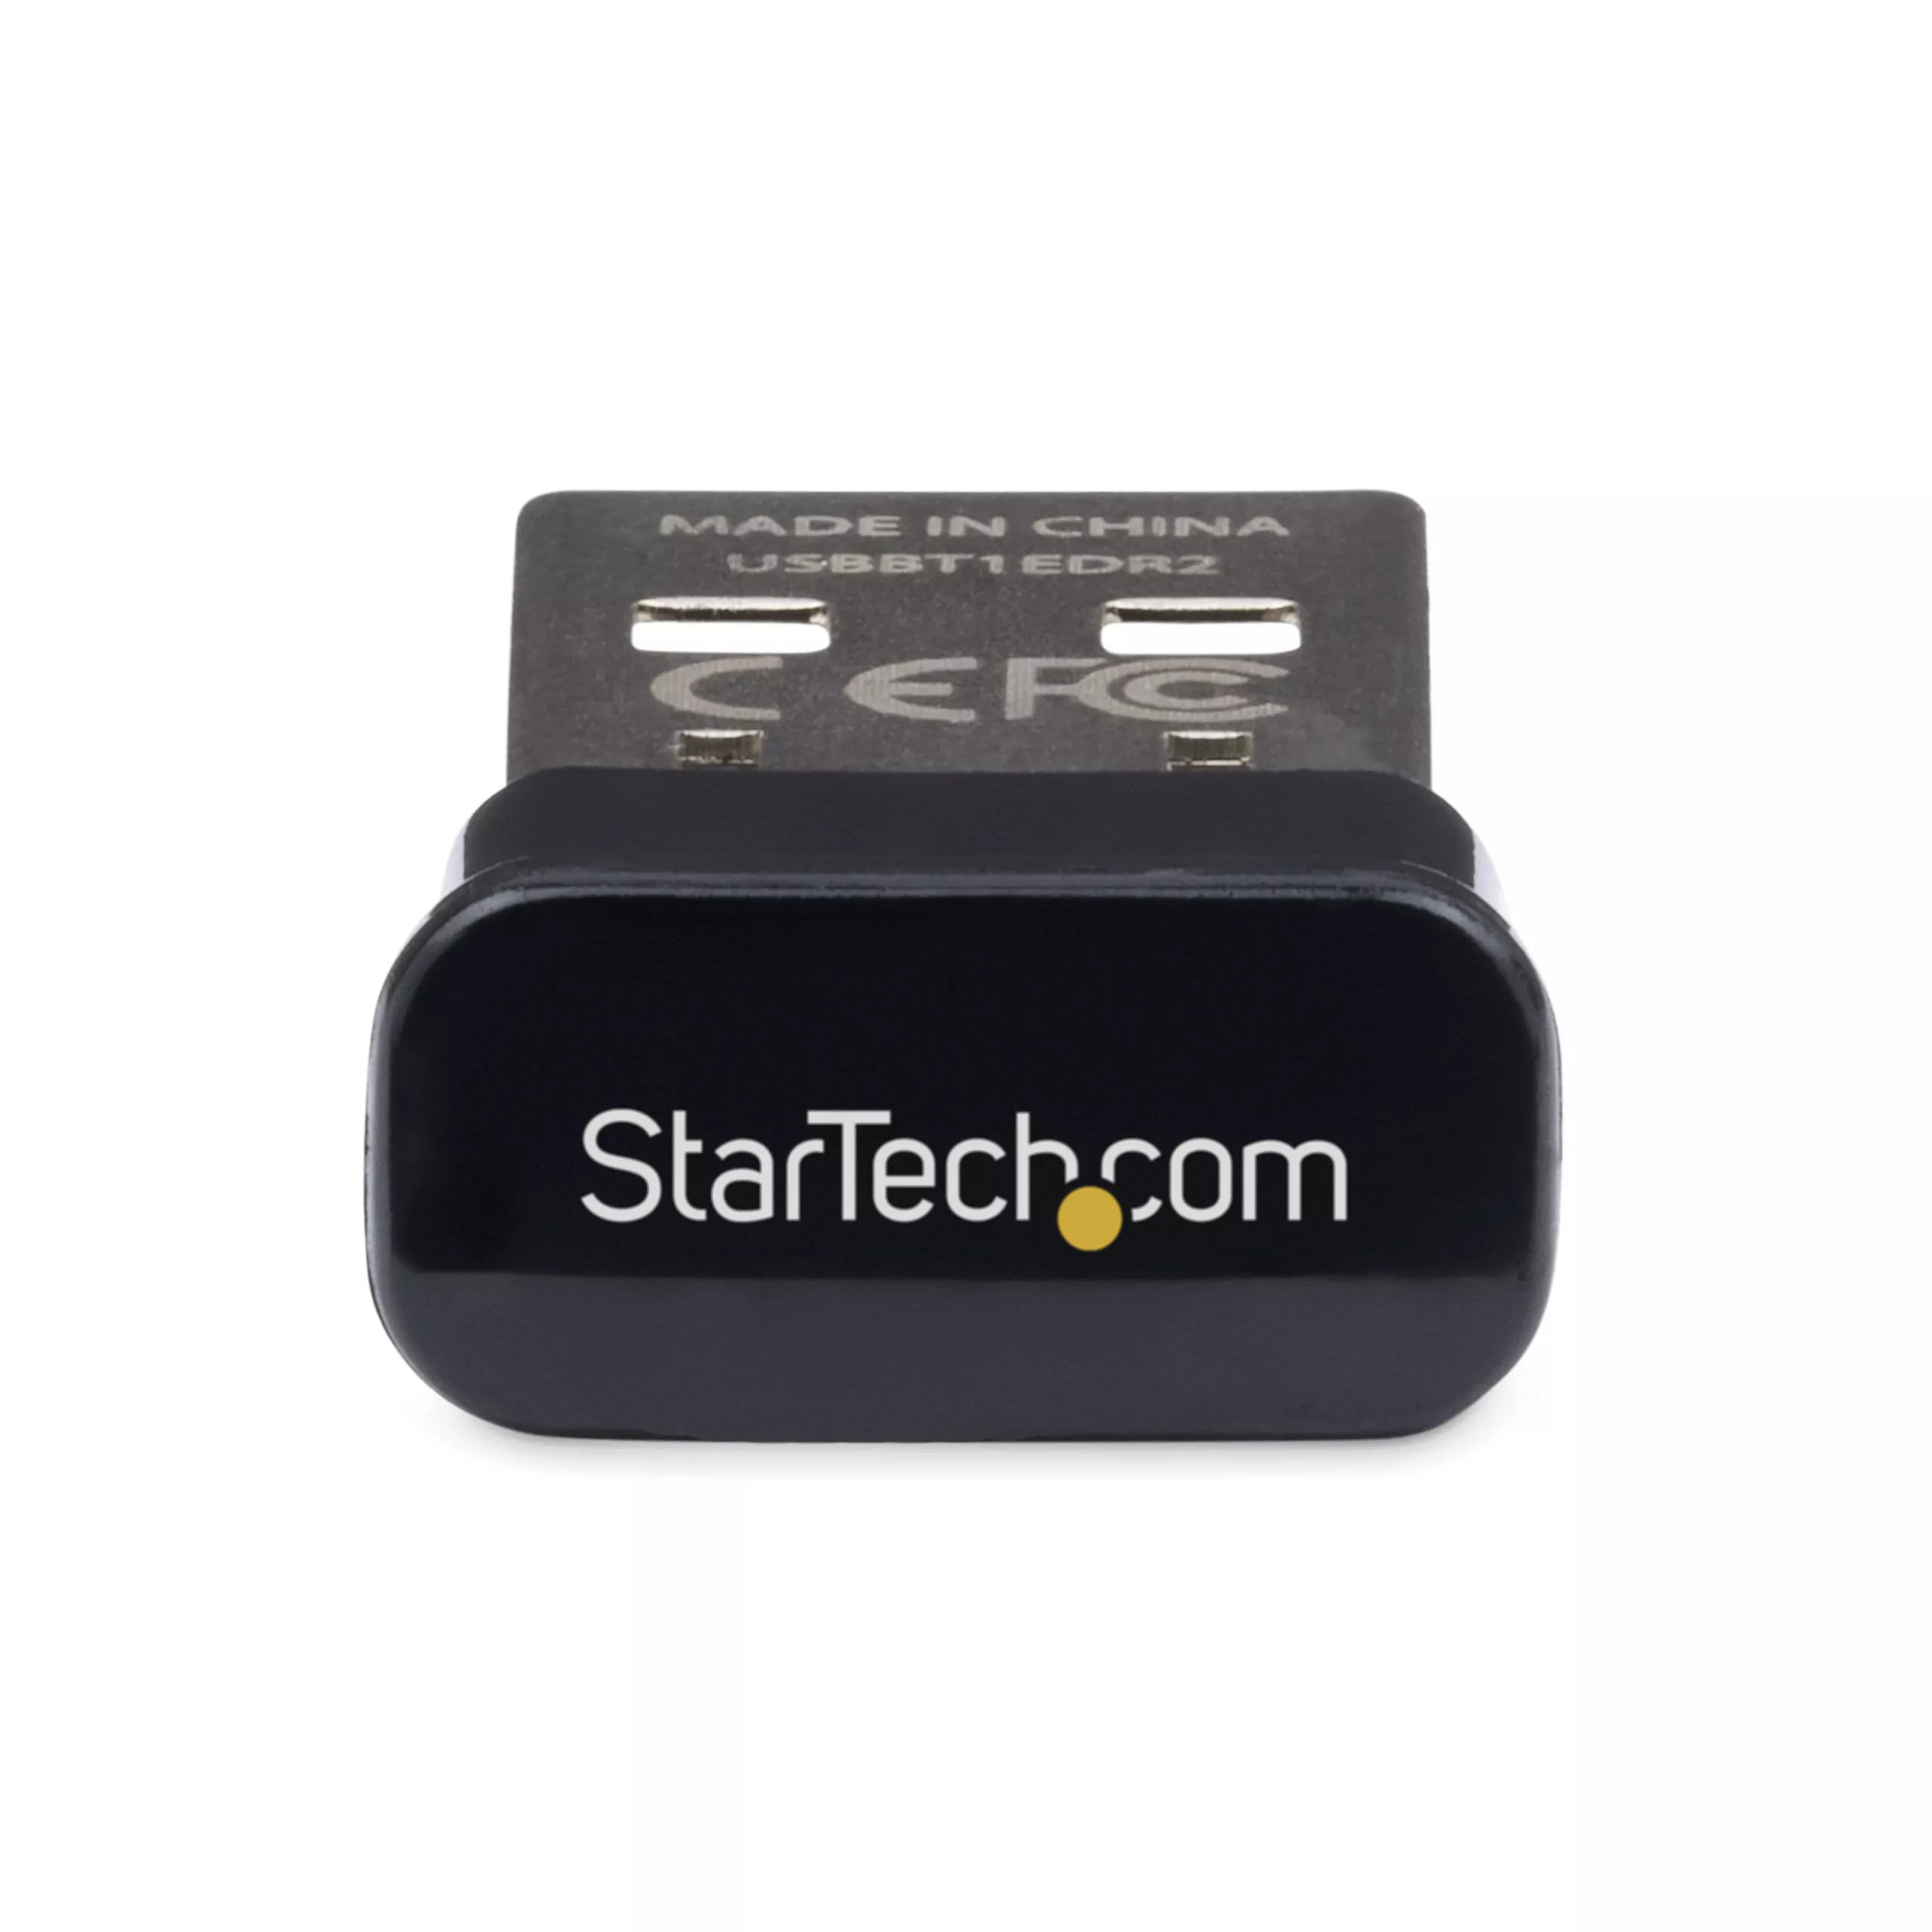 Achat StarTech.com Adaptateur Bluetooth 2.1 Mini USB - Adaptateur sur hello RSE - visuel 3